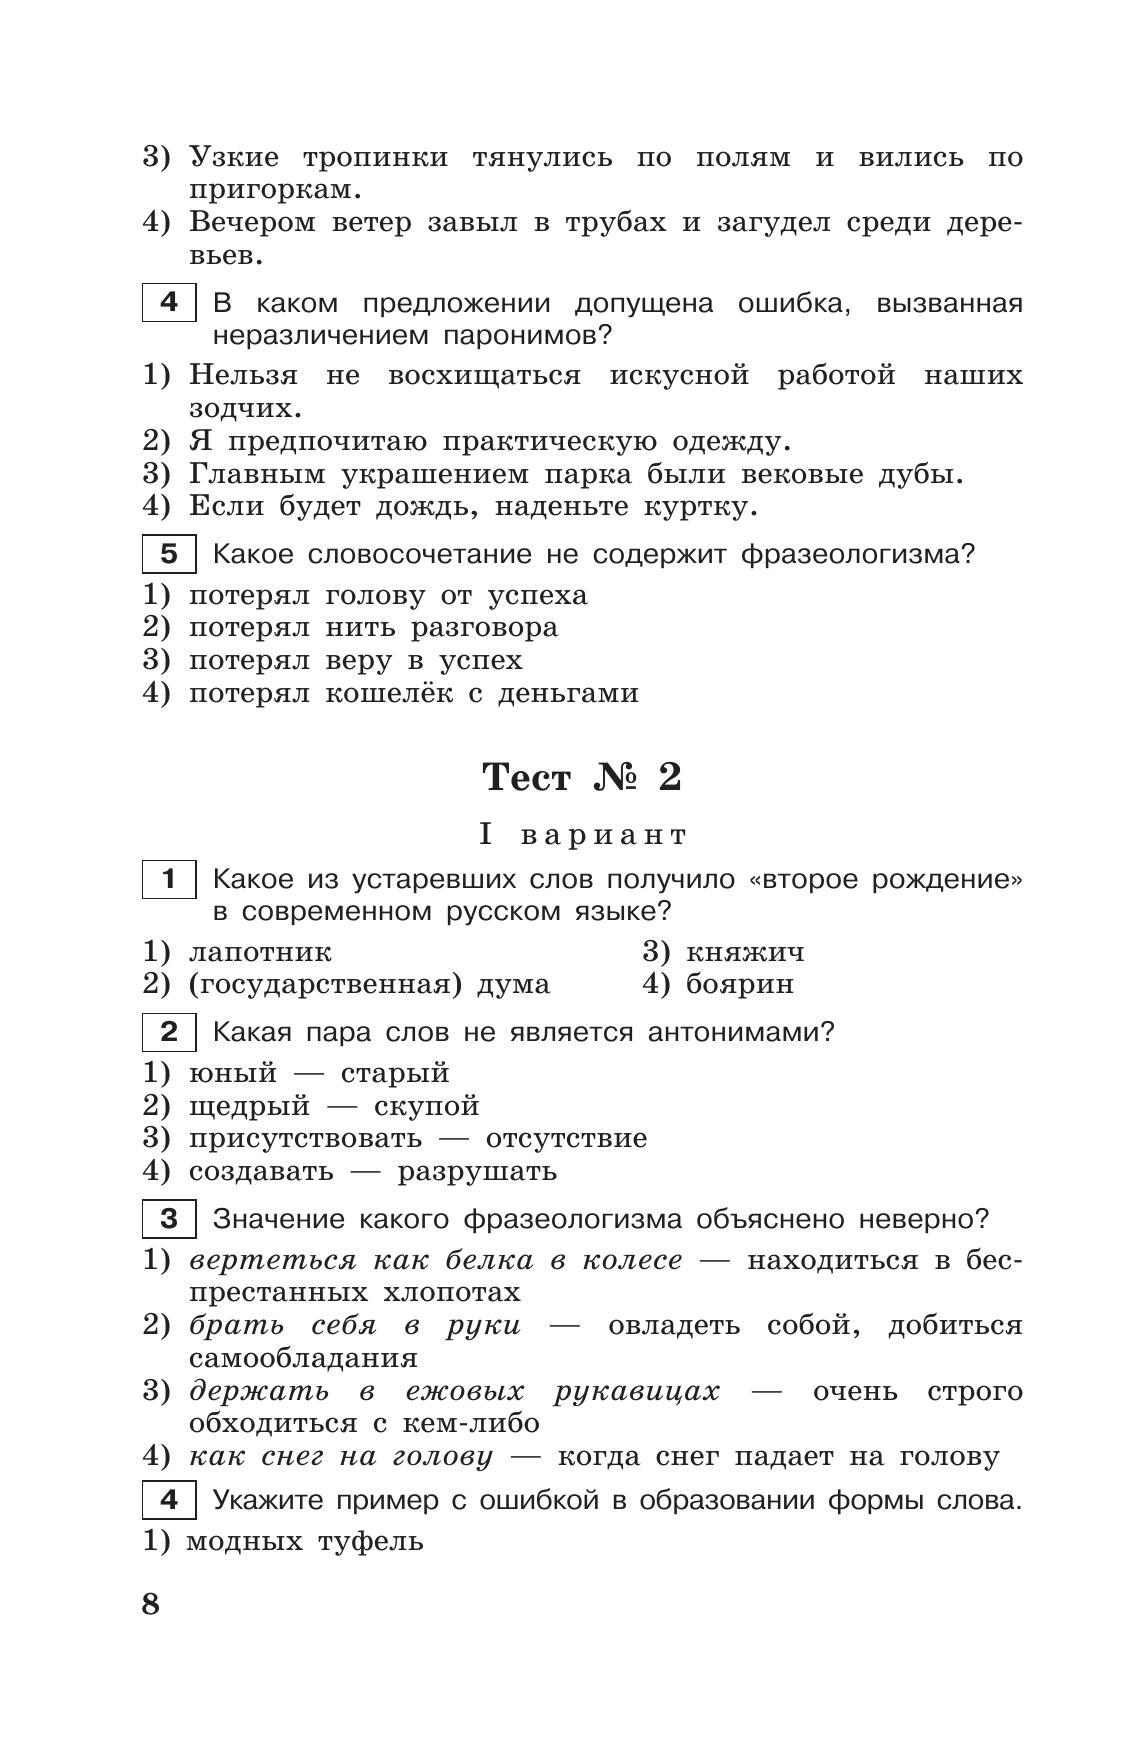 Тестовые задания по русскому языку. 7 класс. 4